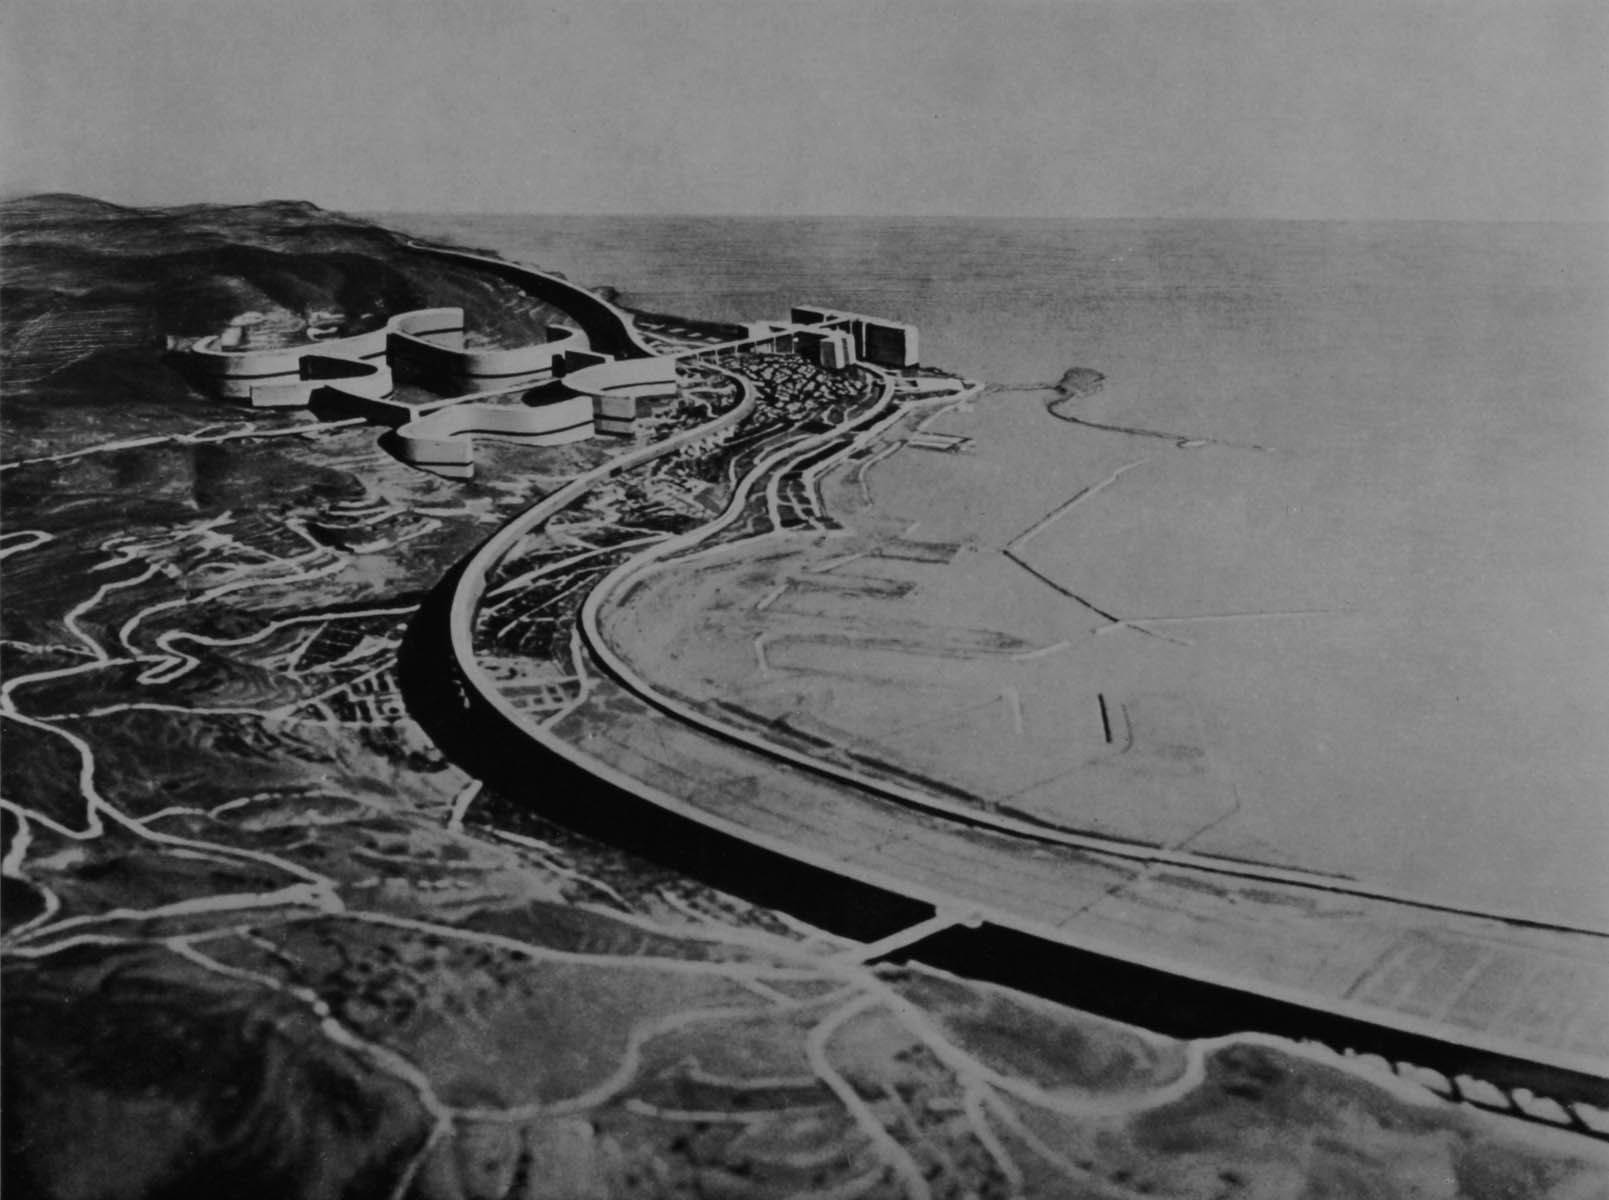 Le Corbusier, "Algier, Gesamtansicht", 1930, Studie